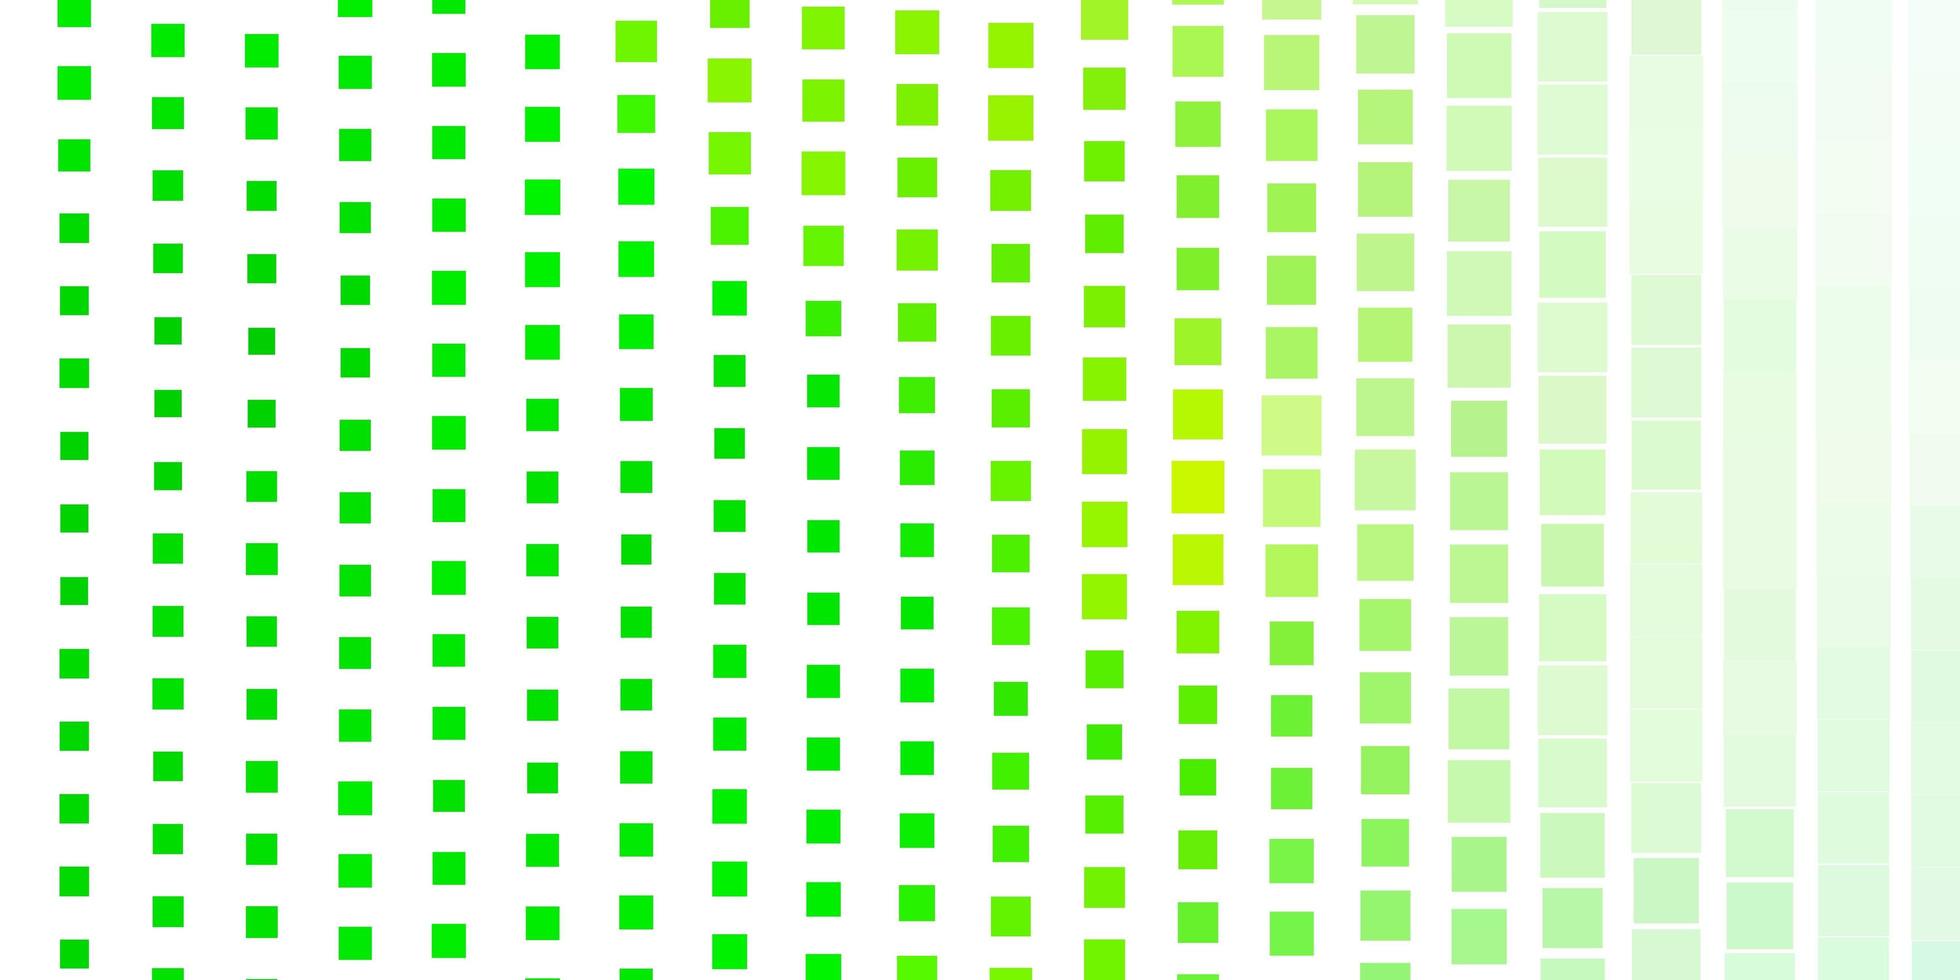 plantilla de vector verde claro en rectángulos ilustración colorida con rectángulos degradados y diseño de cuadrados para la promoción de su negocio